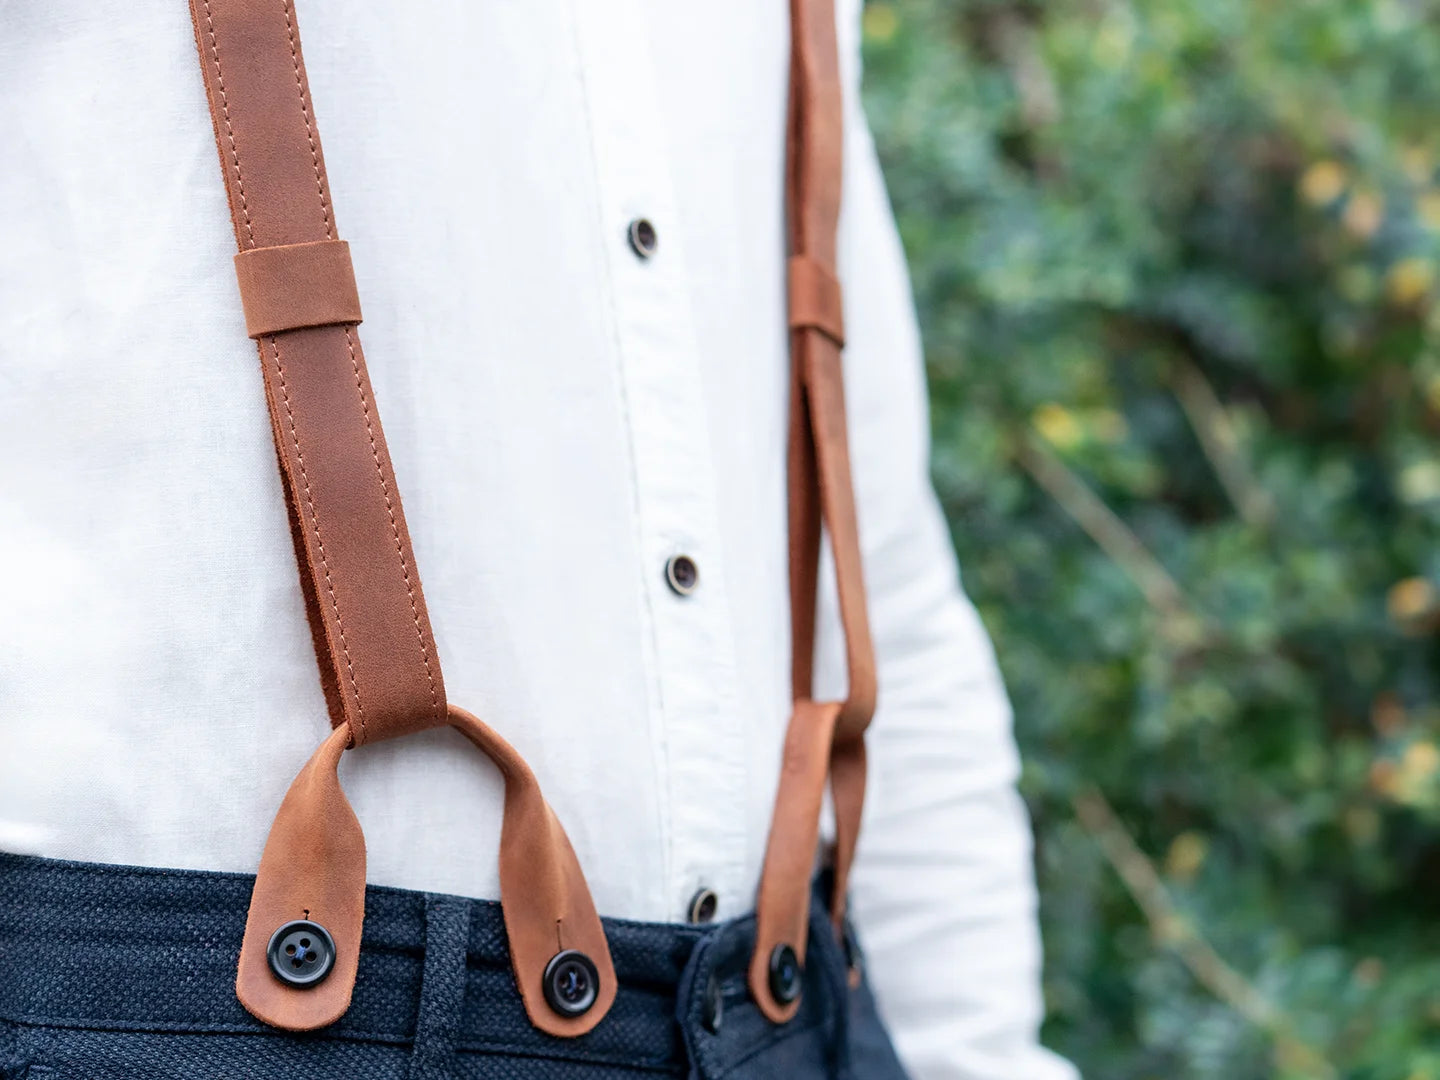 Adjustable Brown Leather Suspenders